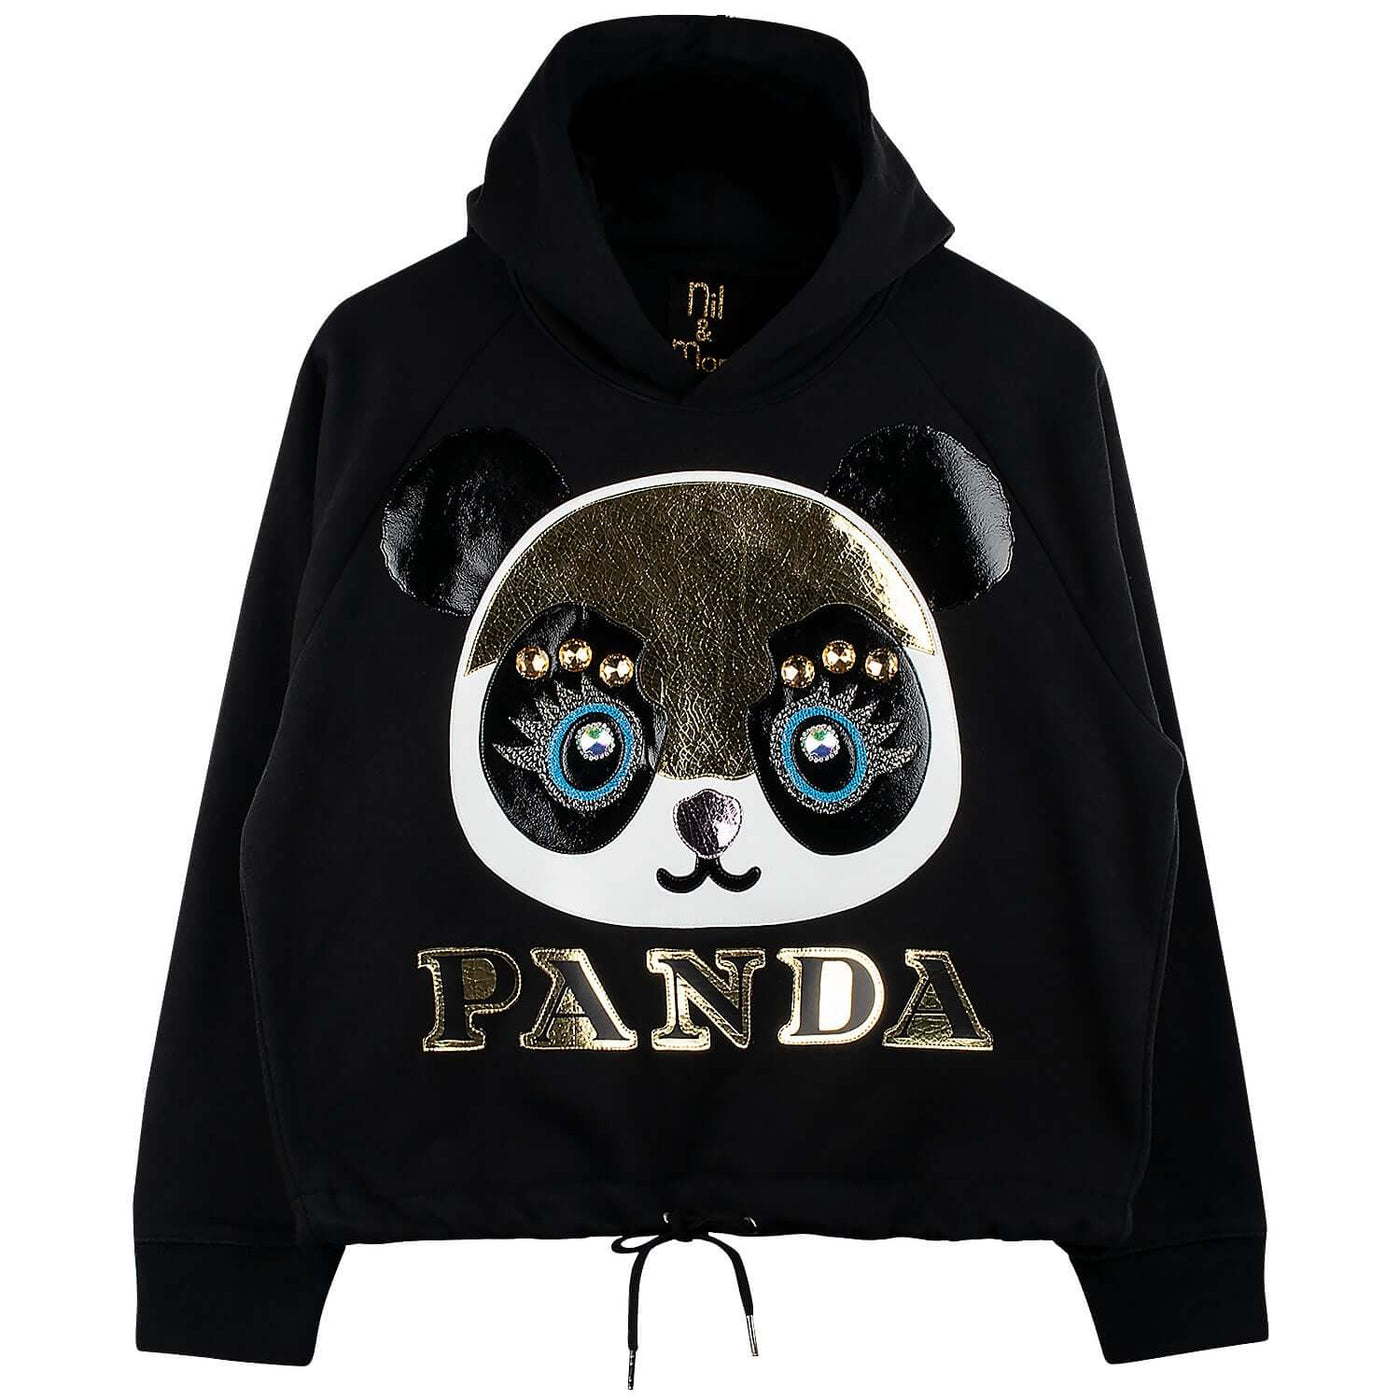 Crop Hoodie "Panda" - black